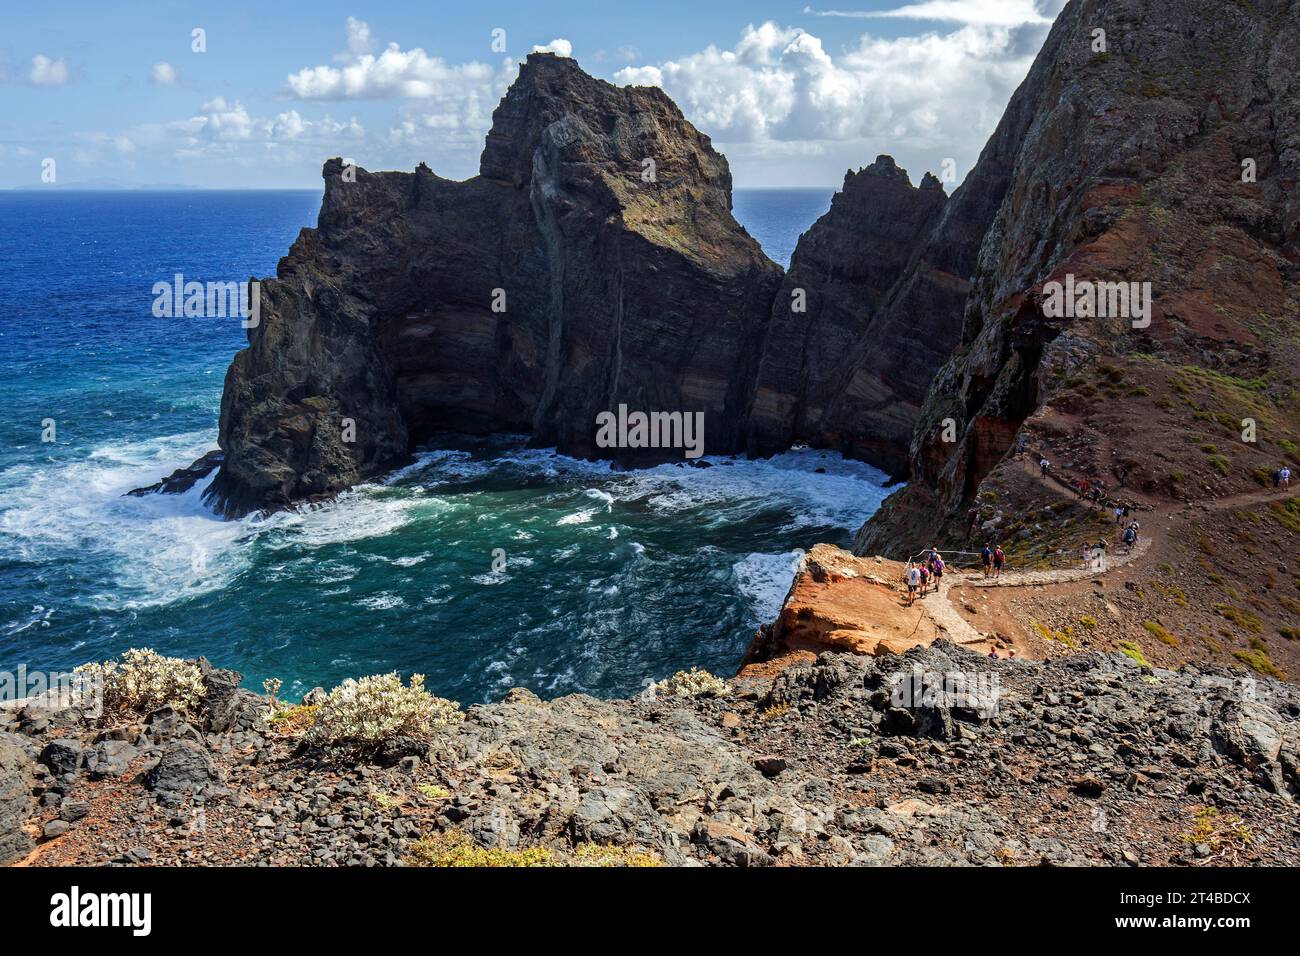 Paysage côtier, falaises et mer, côte accidentée avec formations rocheuses, Ponta de Sao Lourenco, Madère, Portugal Banque D'Images